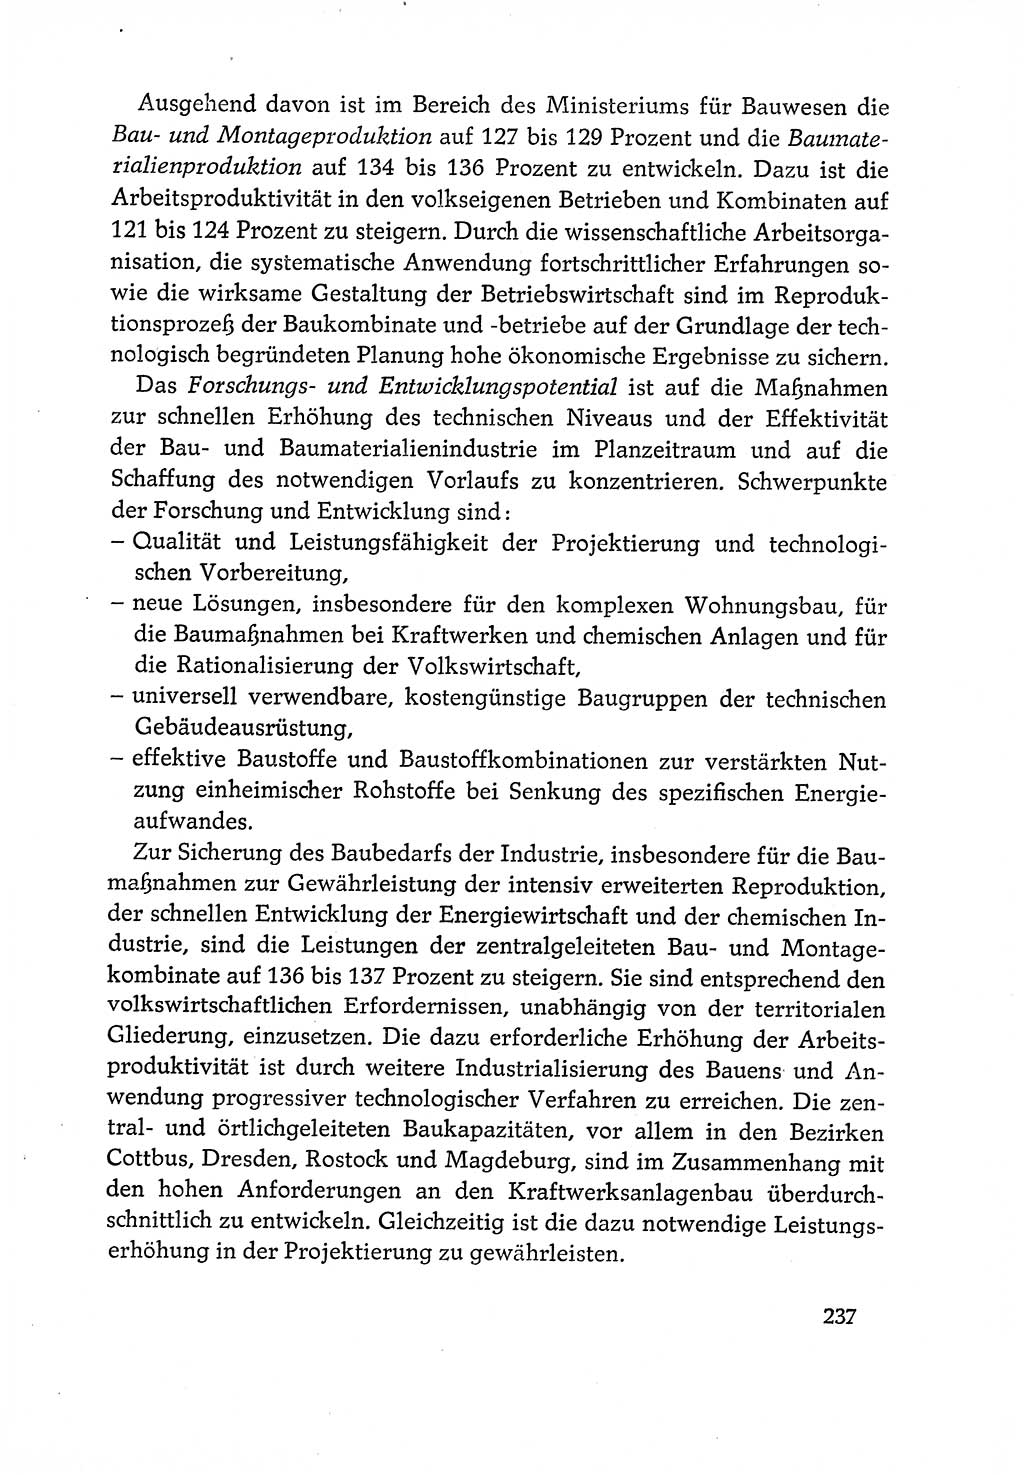 Dokumente der Sozialistischen Einheitspartei Deutschlands (SED) [Deutsche Demokratische Republik (DDR)] 1970-1971, Seite 237 (Dok. SED DDR 1970-1971, S. 237)